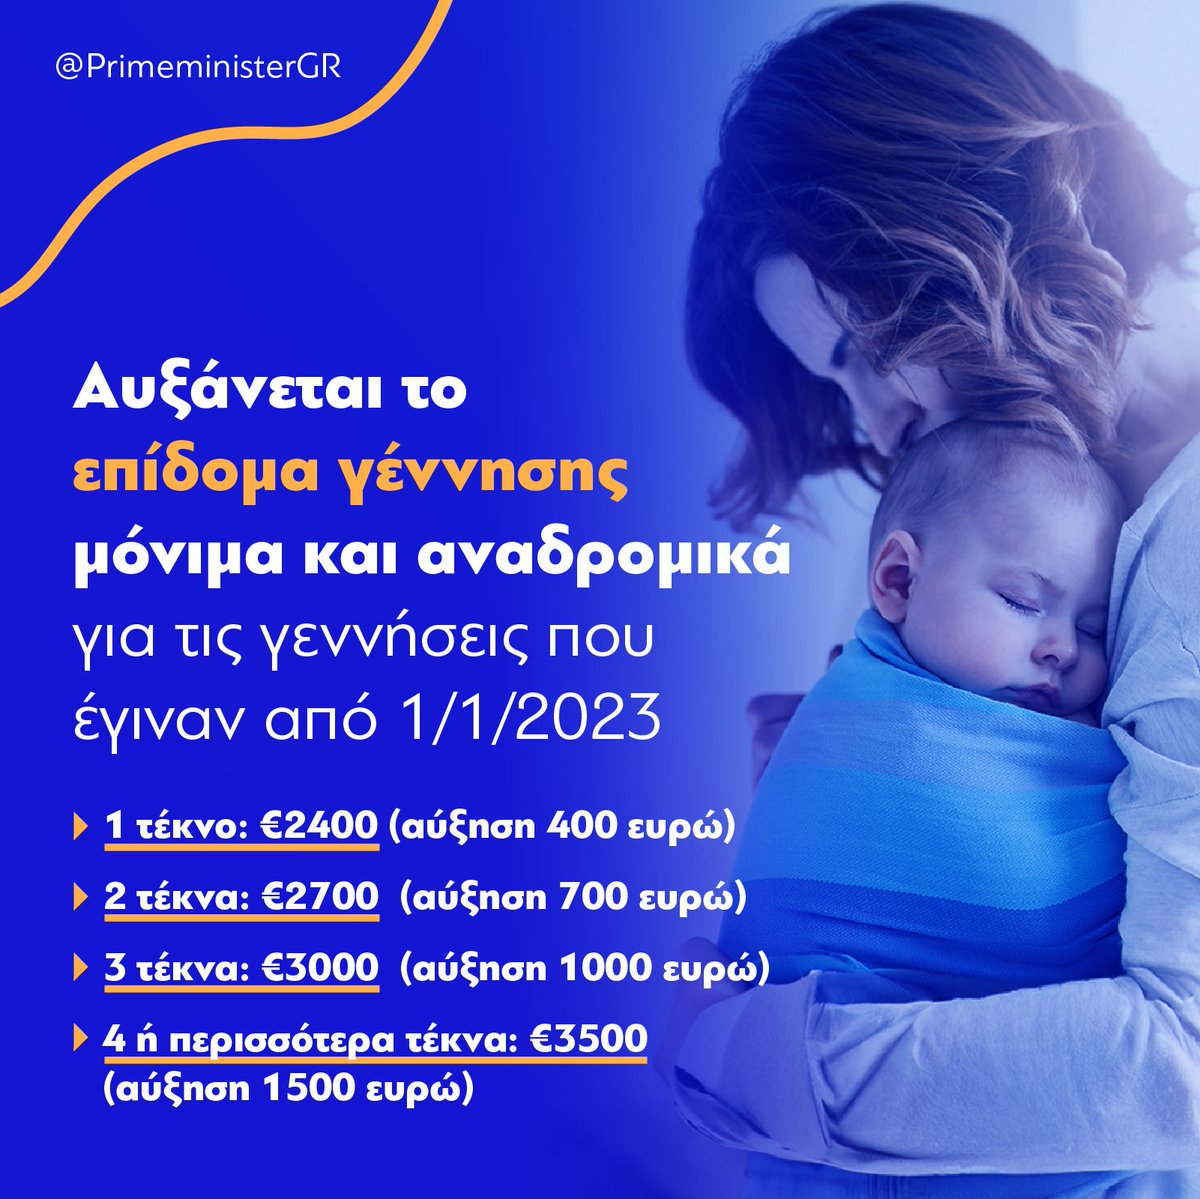 Η στήριξη των οικογενειών με παιδιά αποτελεί βασική μας προτεραιότητα. Γι' αυτό και αυξάνουμε το επίδομα γέννησης μόνιμα και αναδρομικά για τις γεννήσεις που έγιναν από 1/1/2023. Από €2.000 για κάθε παιδί, σε €2.400 έως €3.500 ανάλογα με τον αριθμό των παιδιών.